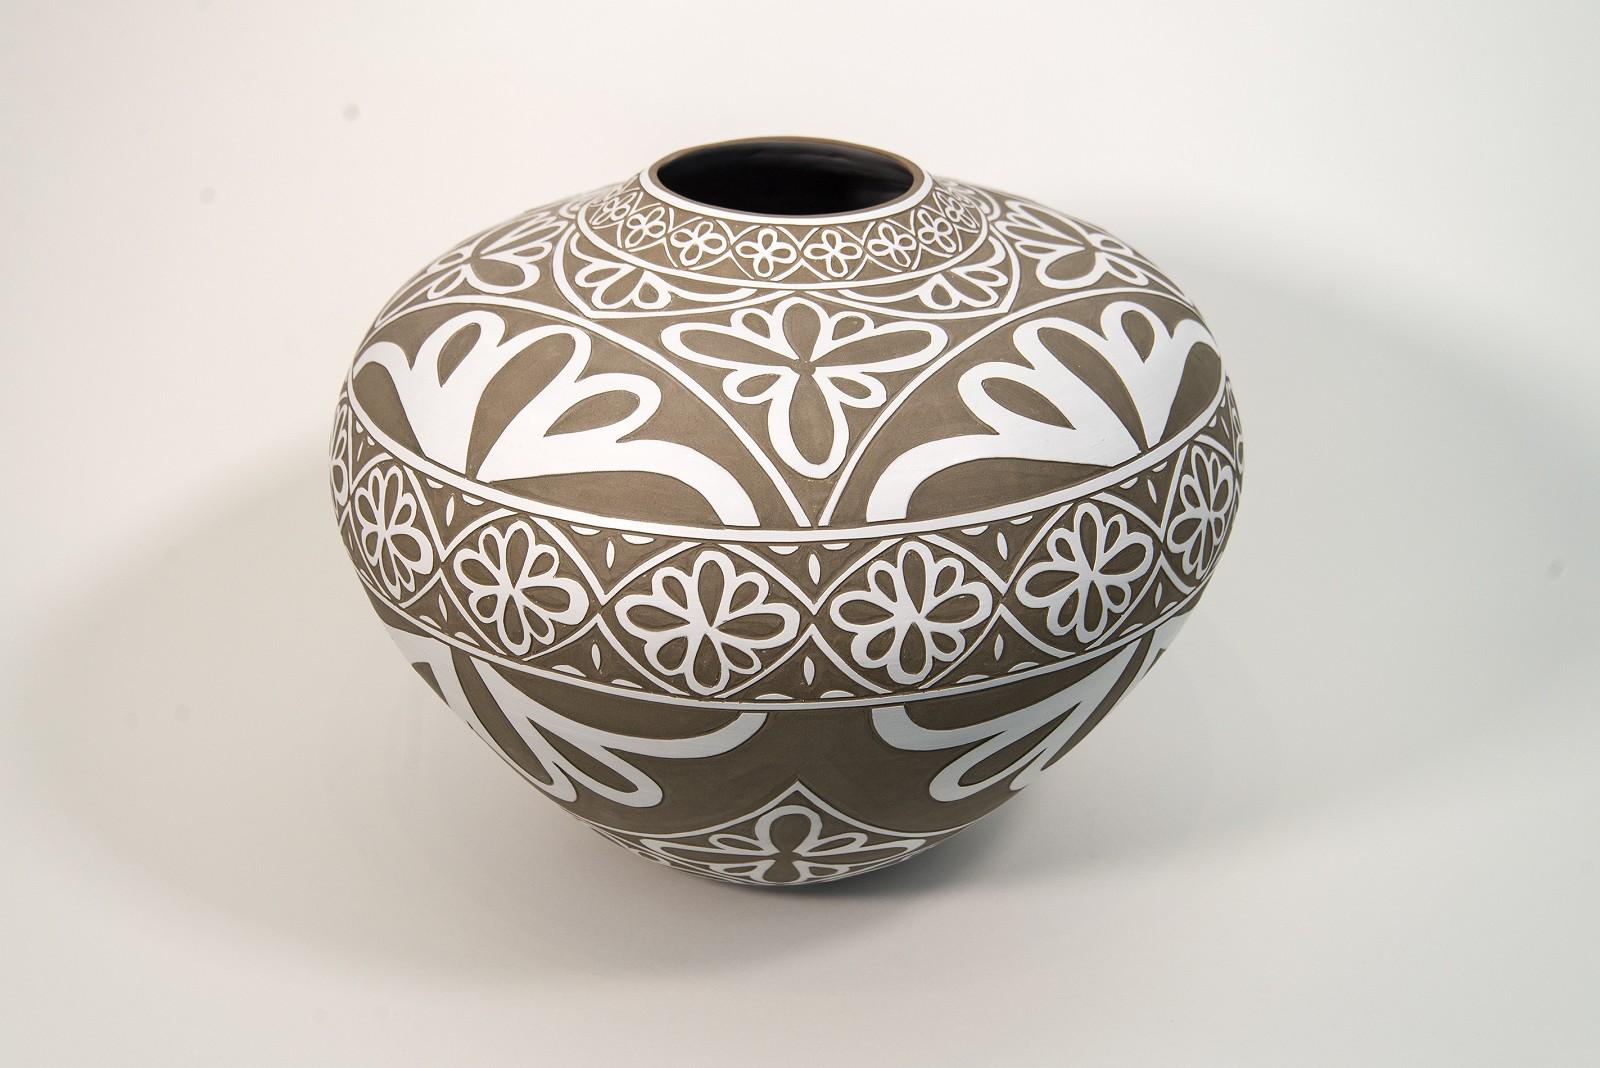 Large Engraved Floral Motif Vessel - decorative, handcrafted, porcelain vessel - Sculpture by Loren Kaplan